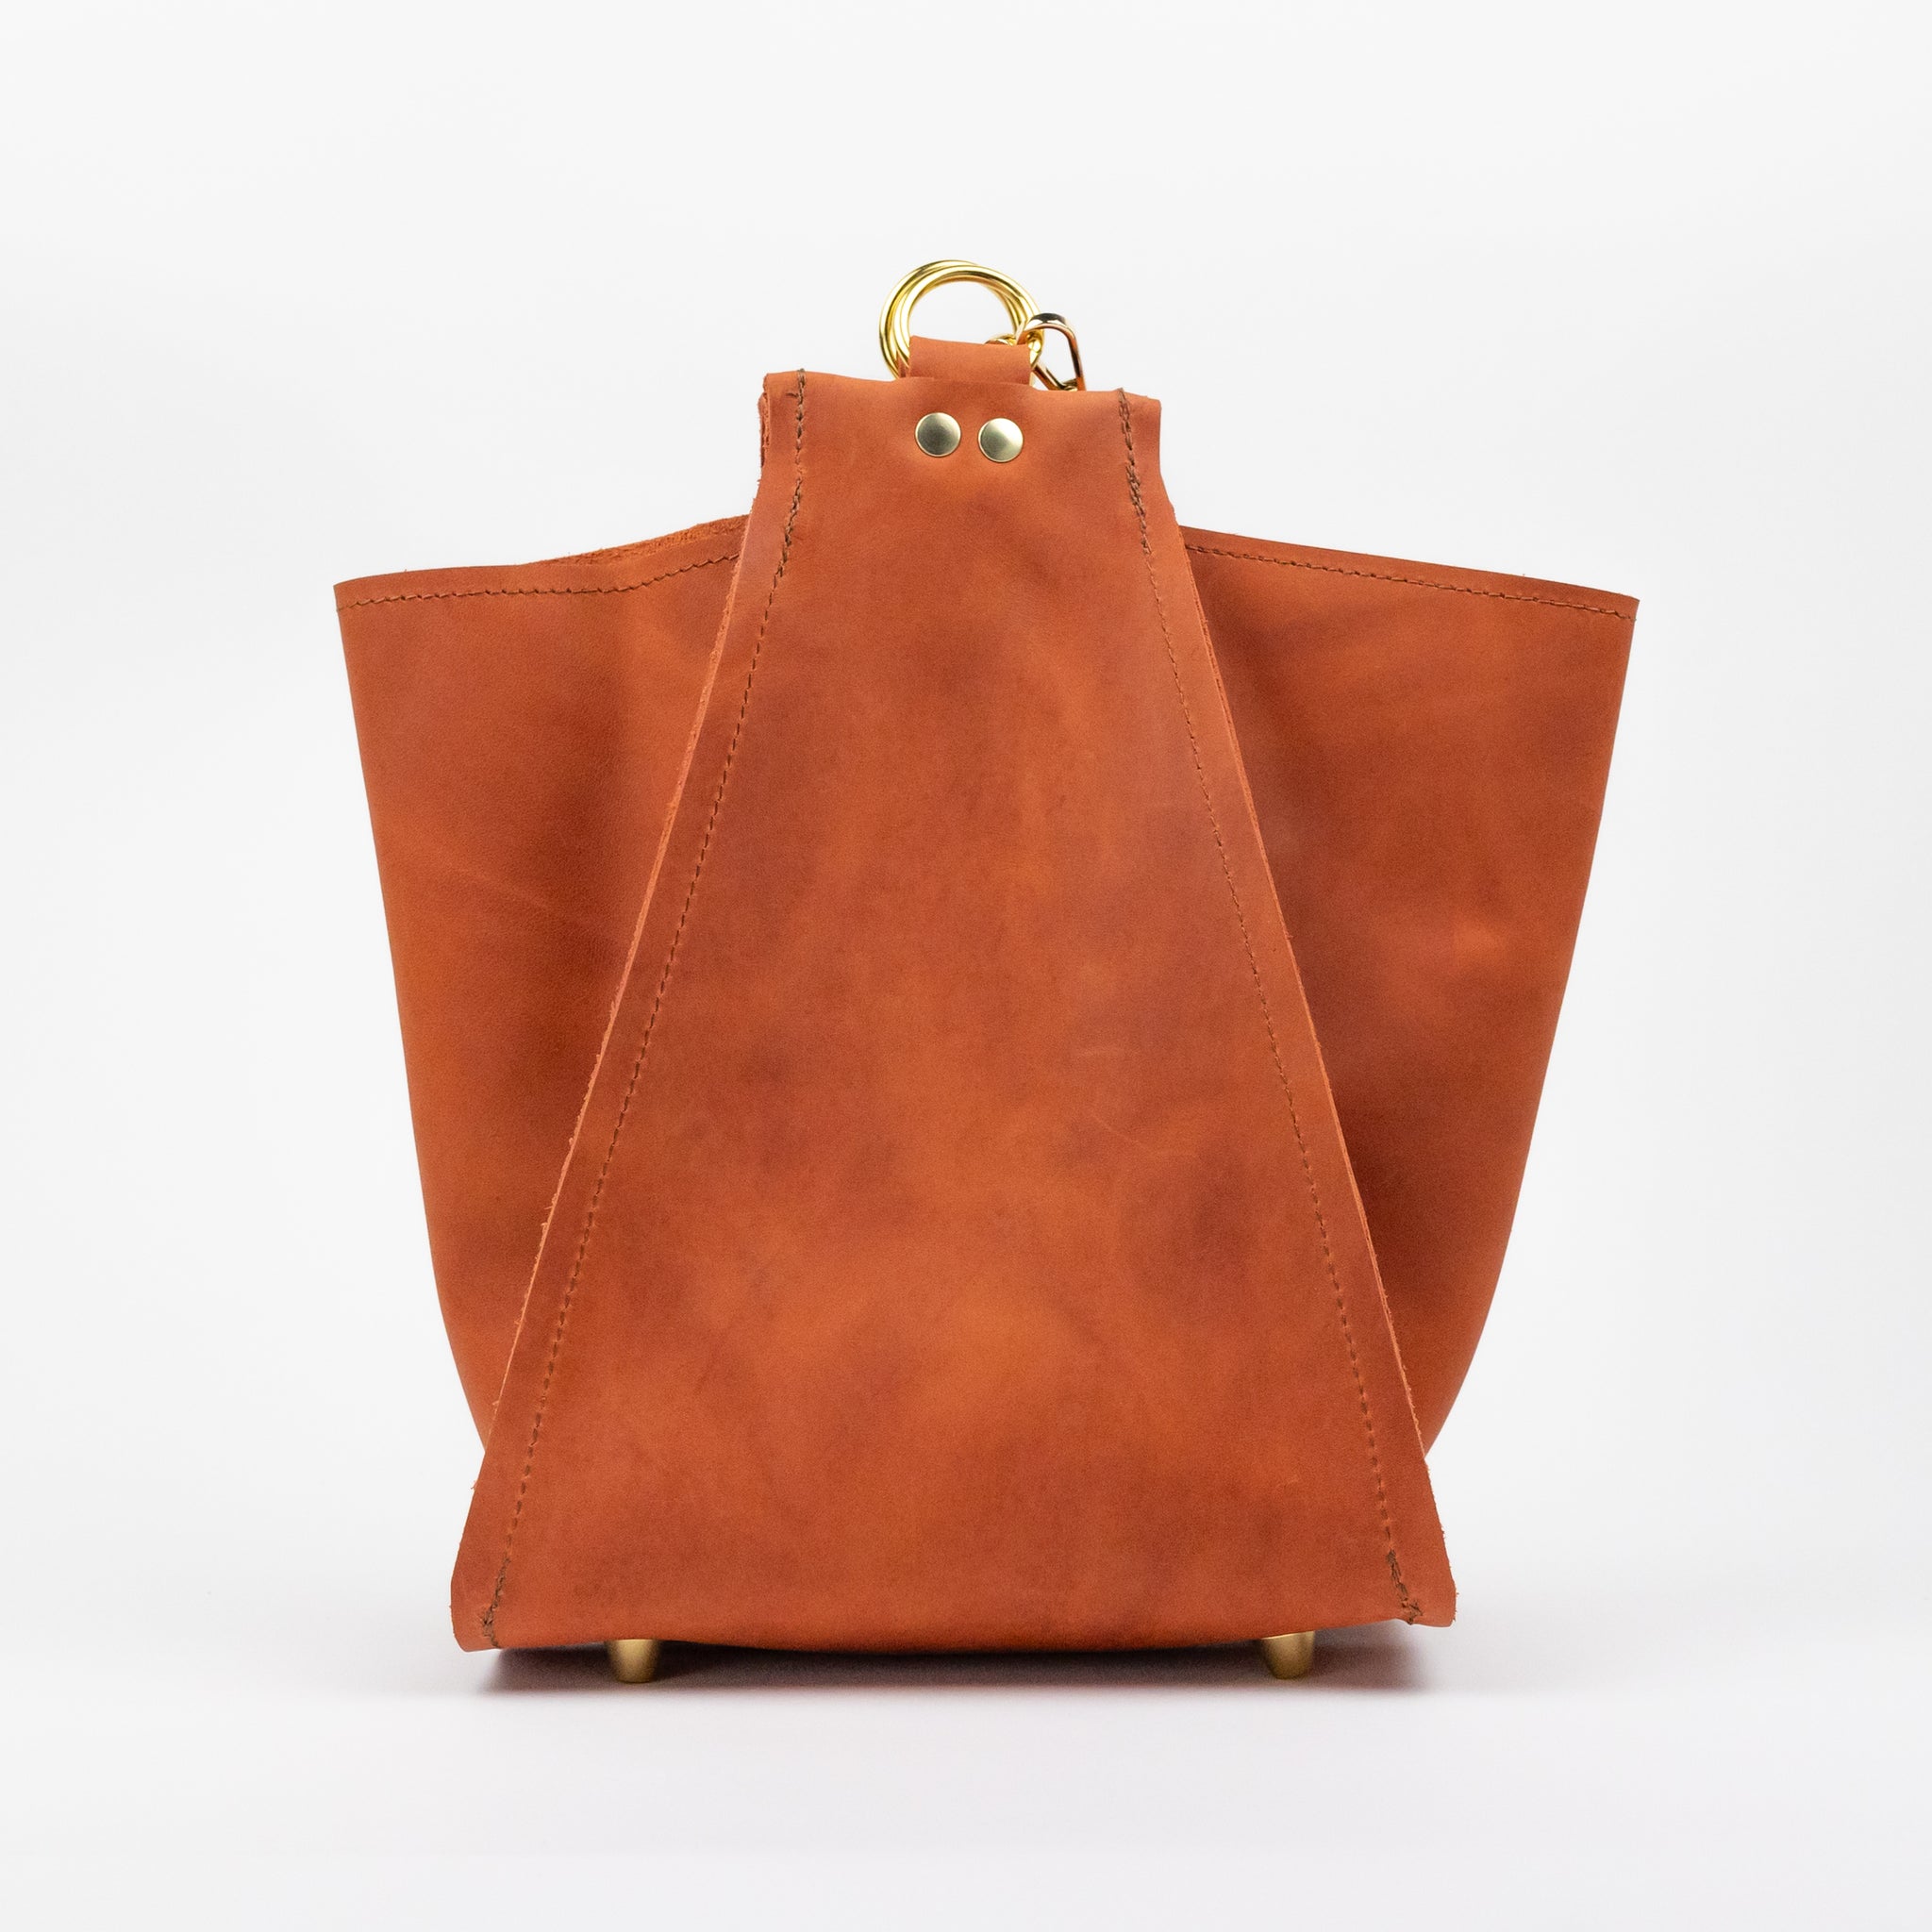 Millie Bucket Bag – Designed For Joy